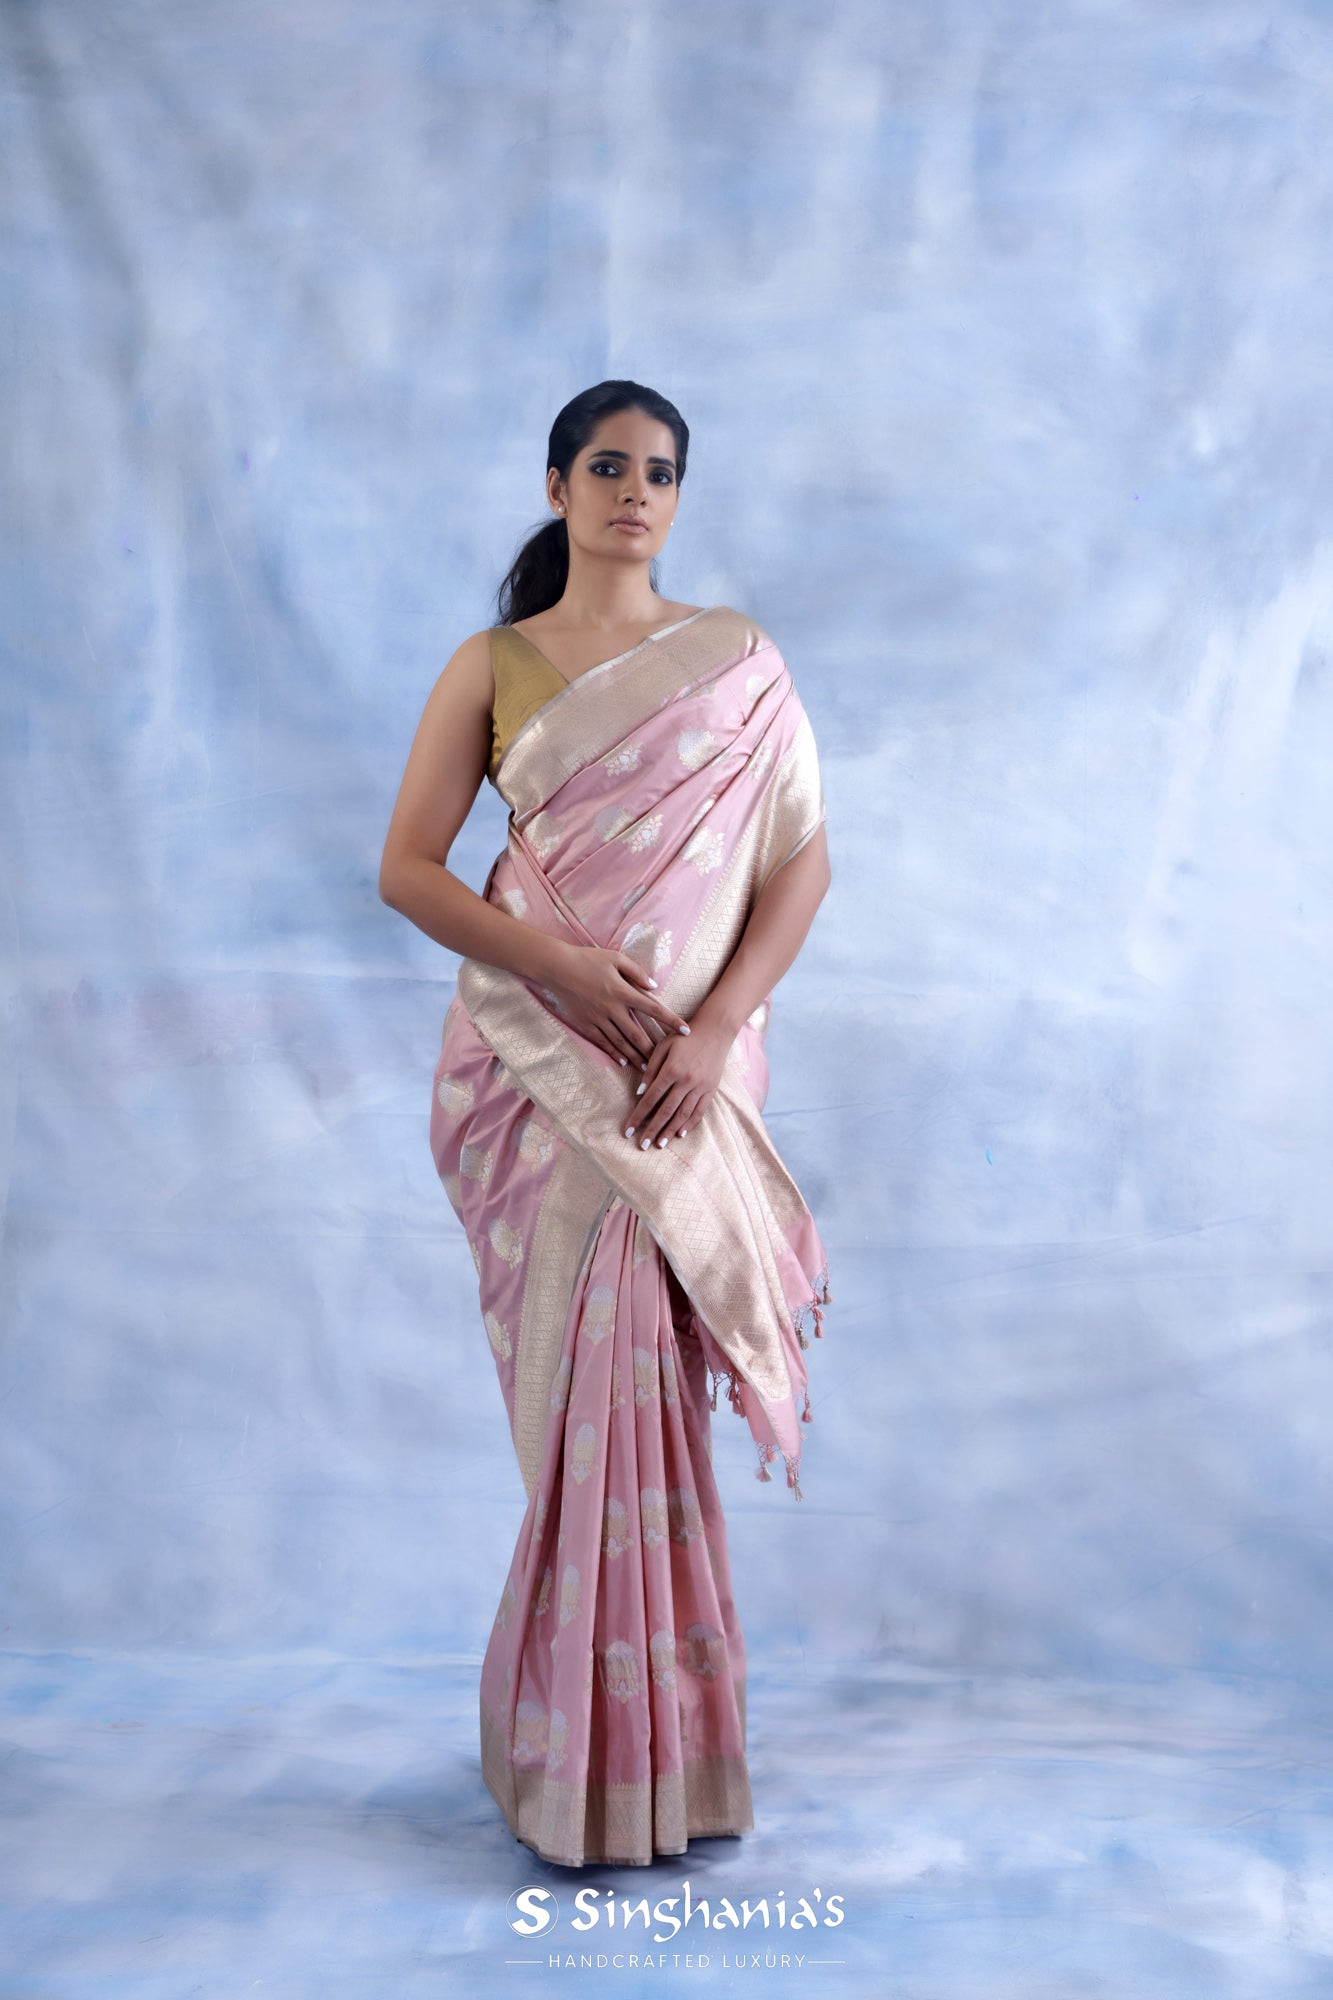 Cotton Candy Pink Banarasi Silk Saree With Floral Buttas Weaving